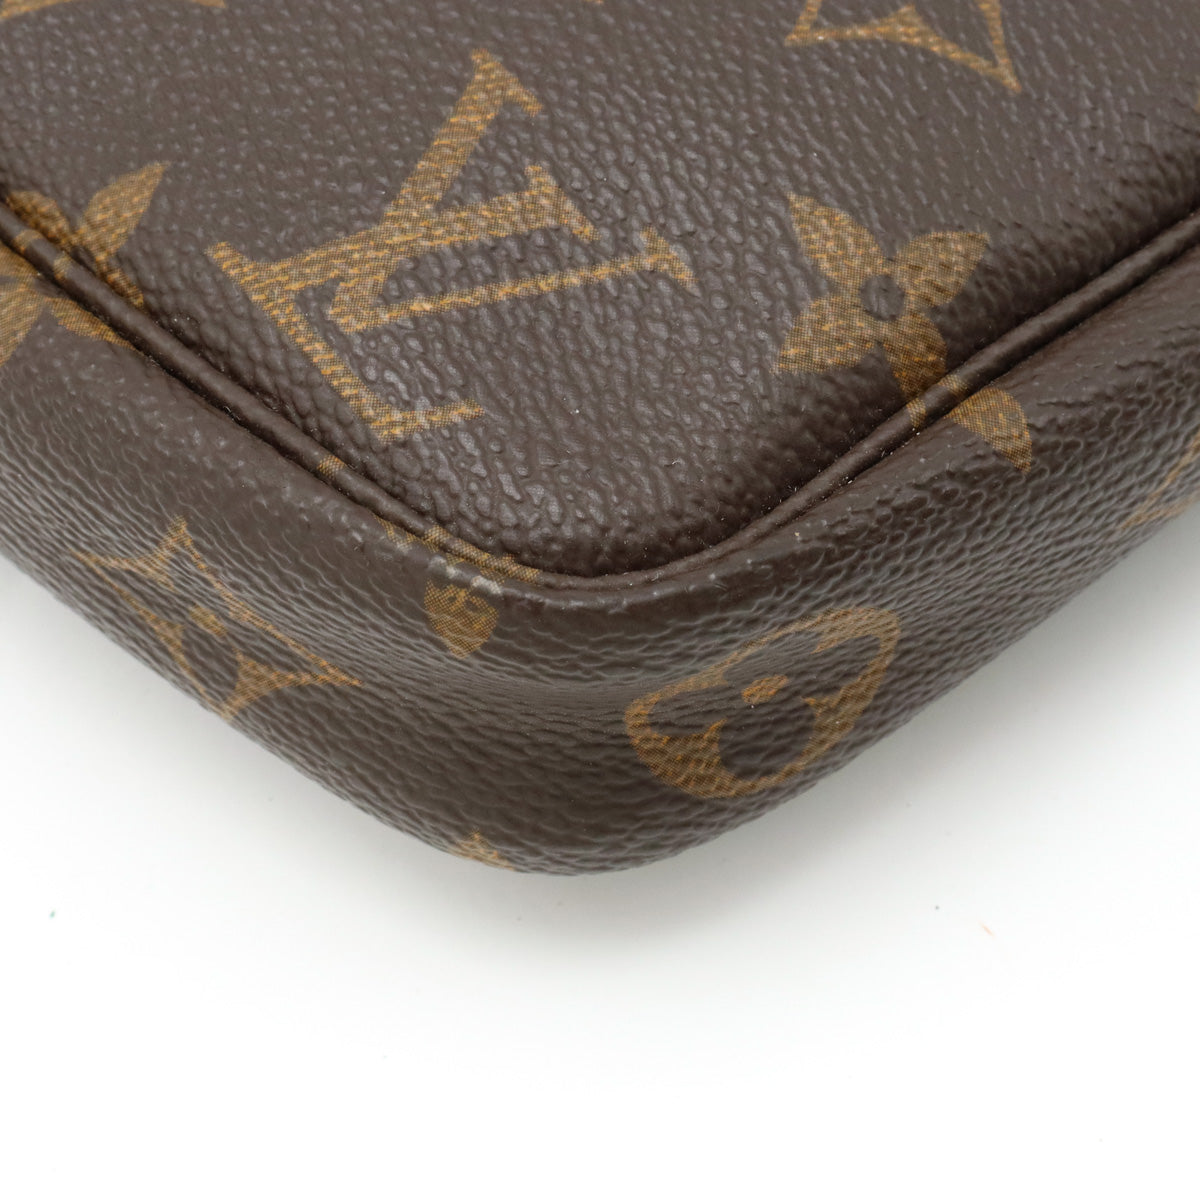 LOUIS VUITTON Pochette Accessoire accessory pouch hand bag M51980